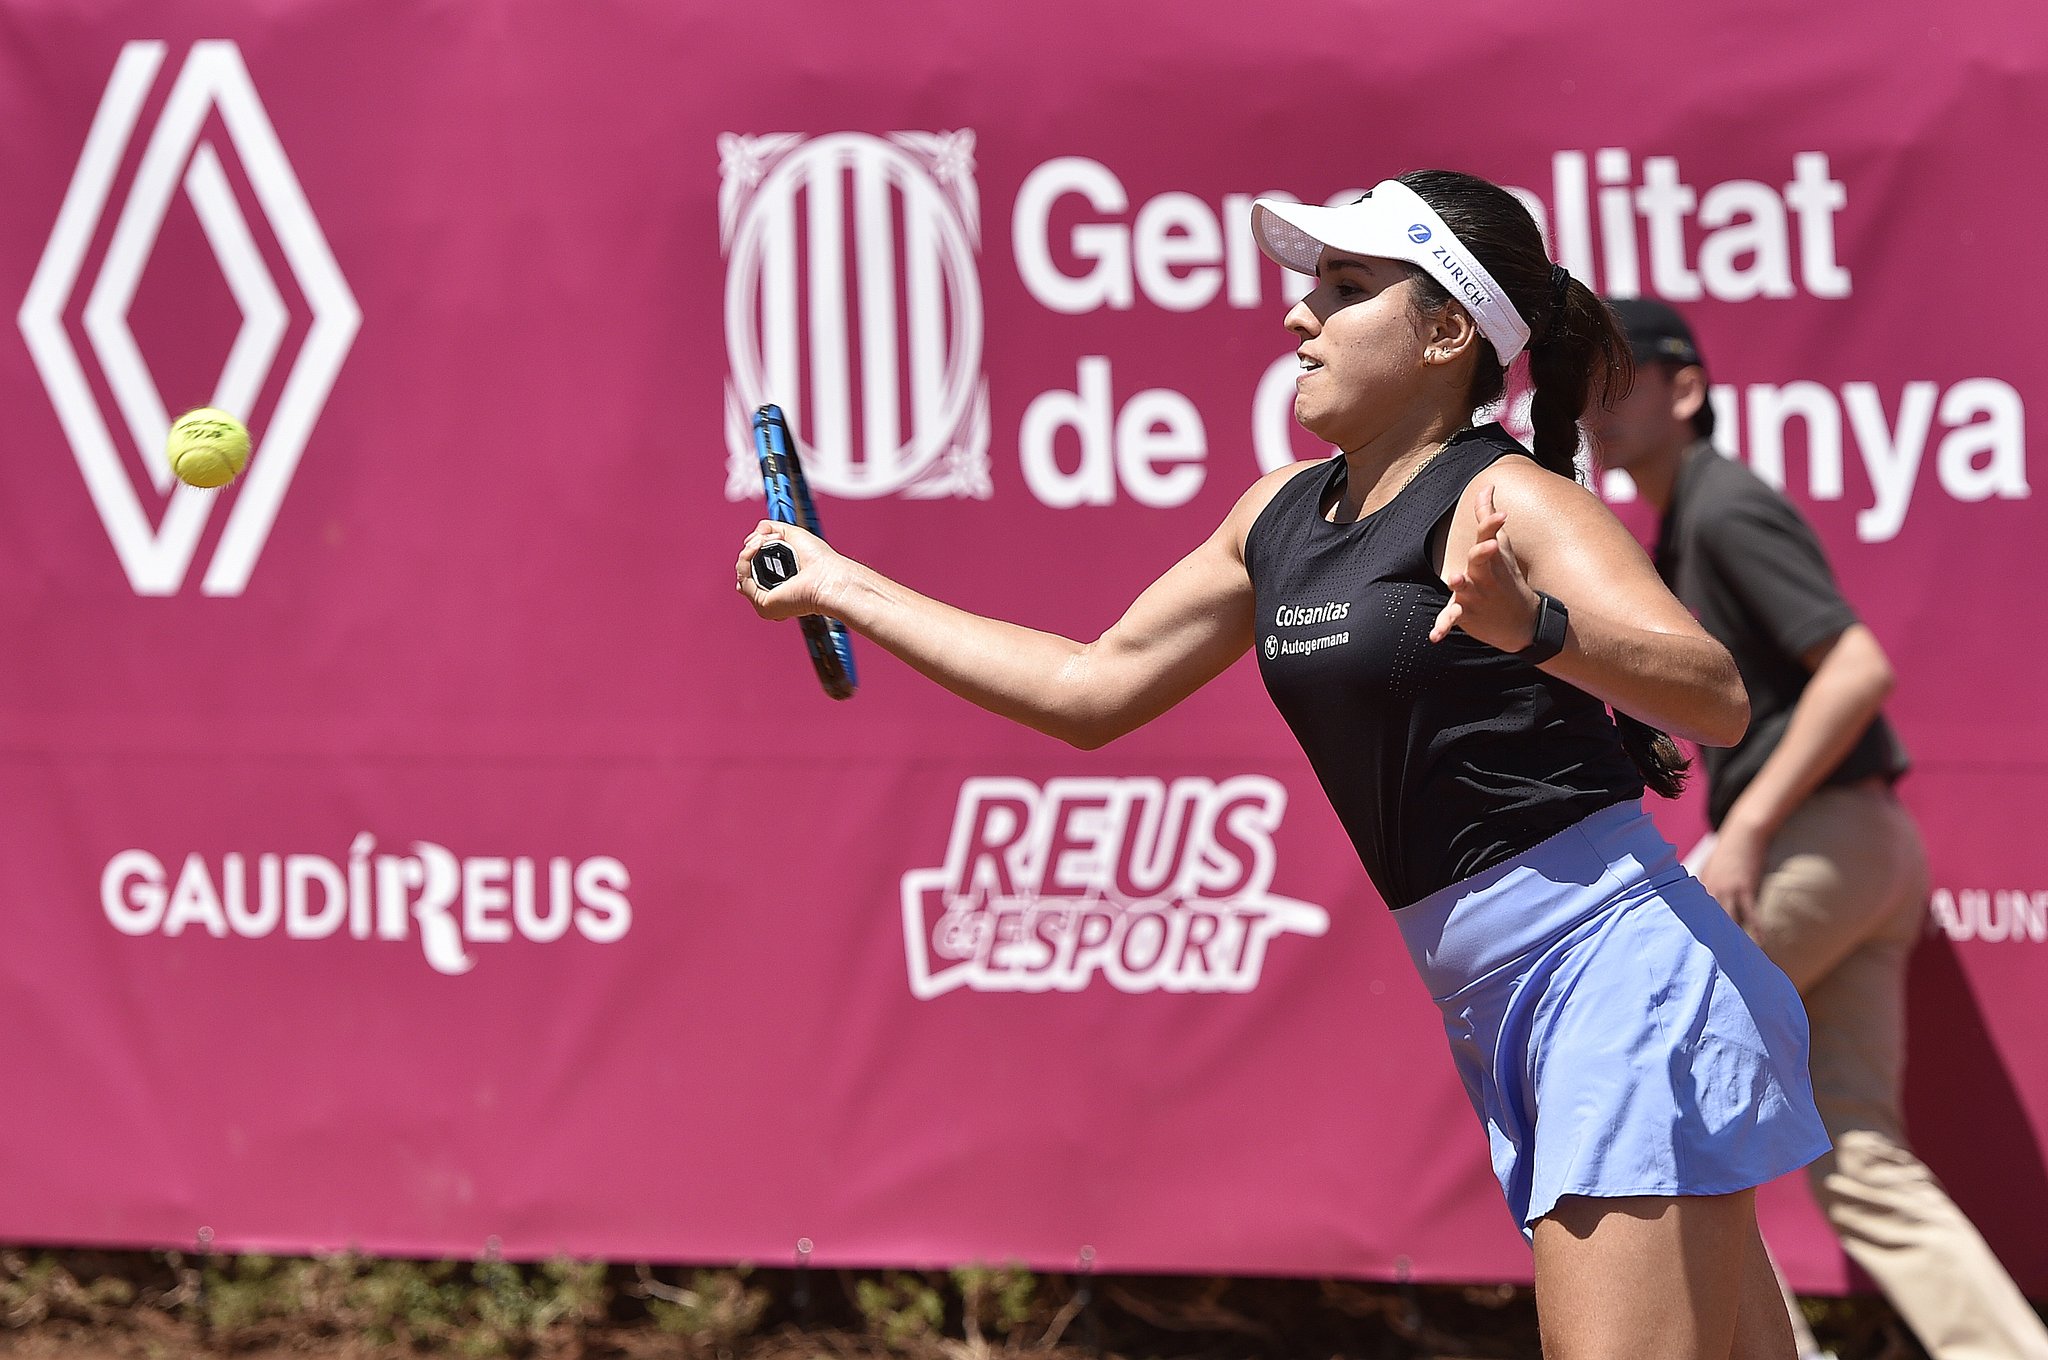 Ganó la colombiana María Camila Osorio: ya está en cuartos de final del Abierto de Cataluña